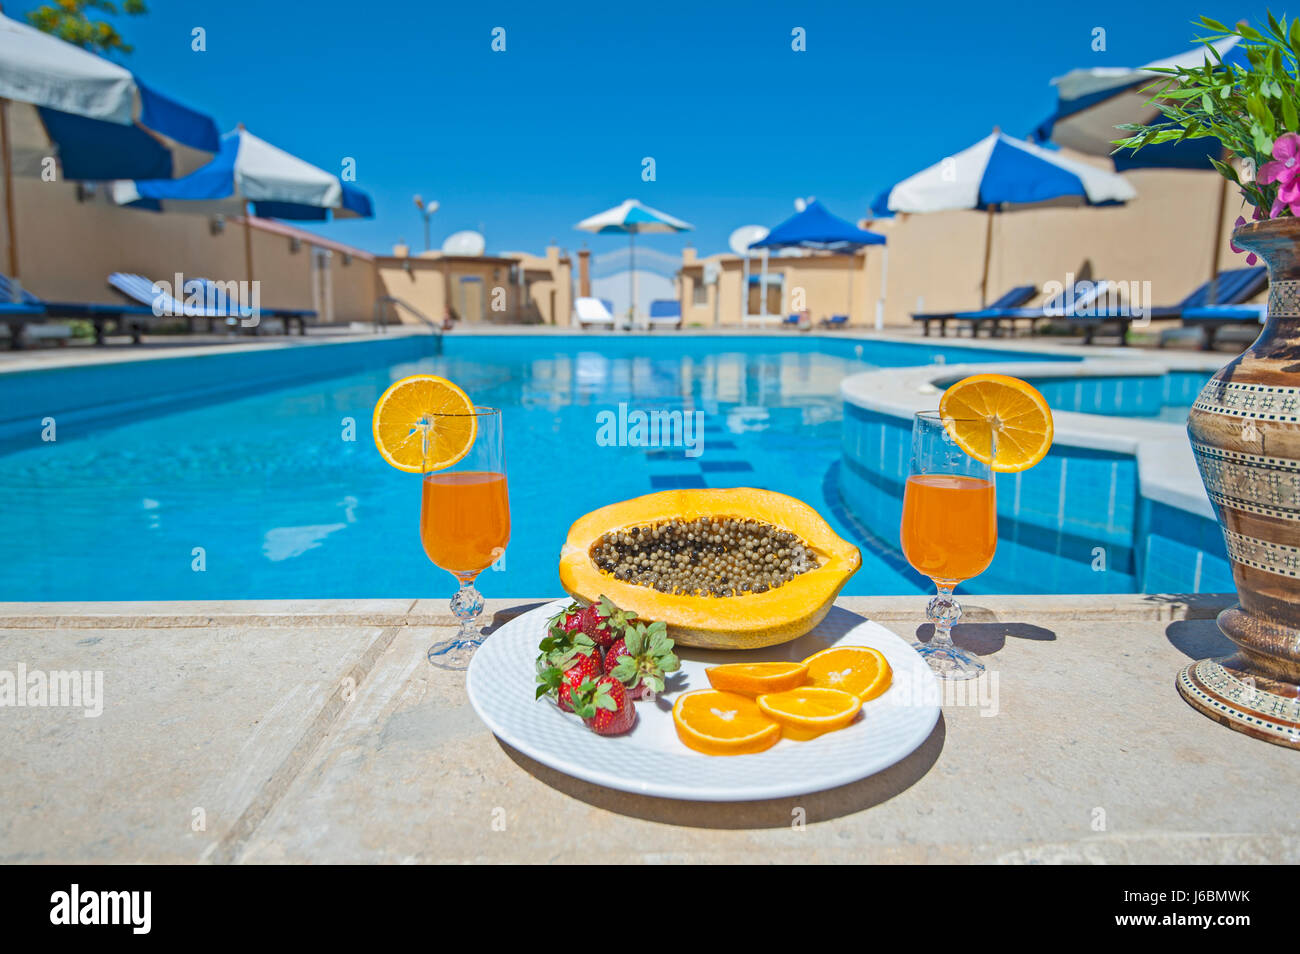 Villa di lusso show home in estate tropicale resort per vacanze con piscina e lettini per prendere il sole Foto Stock